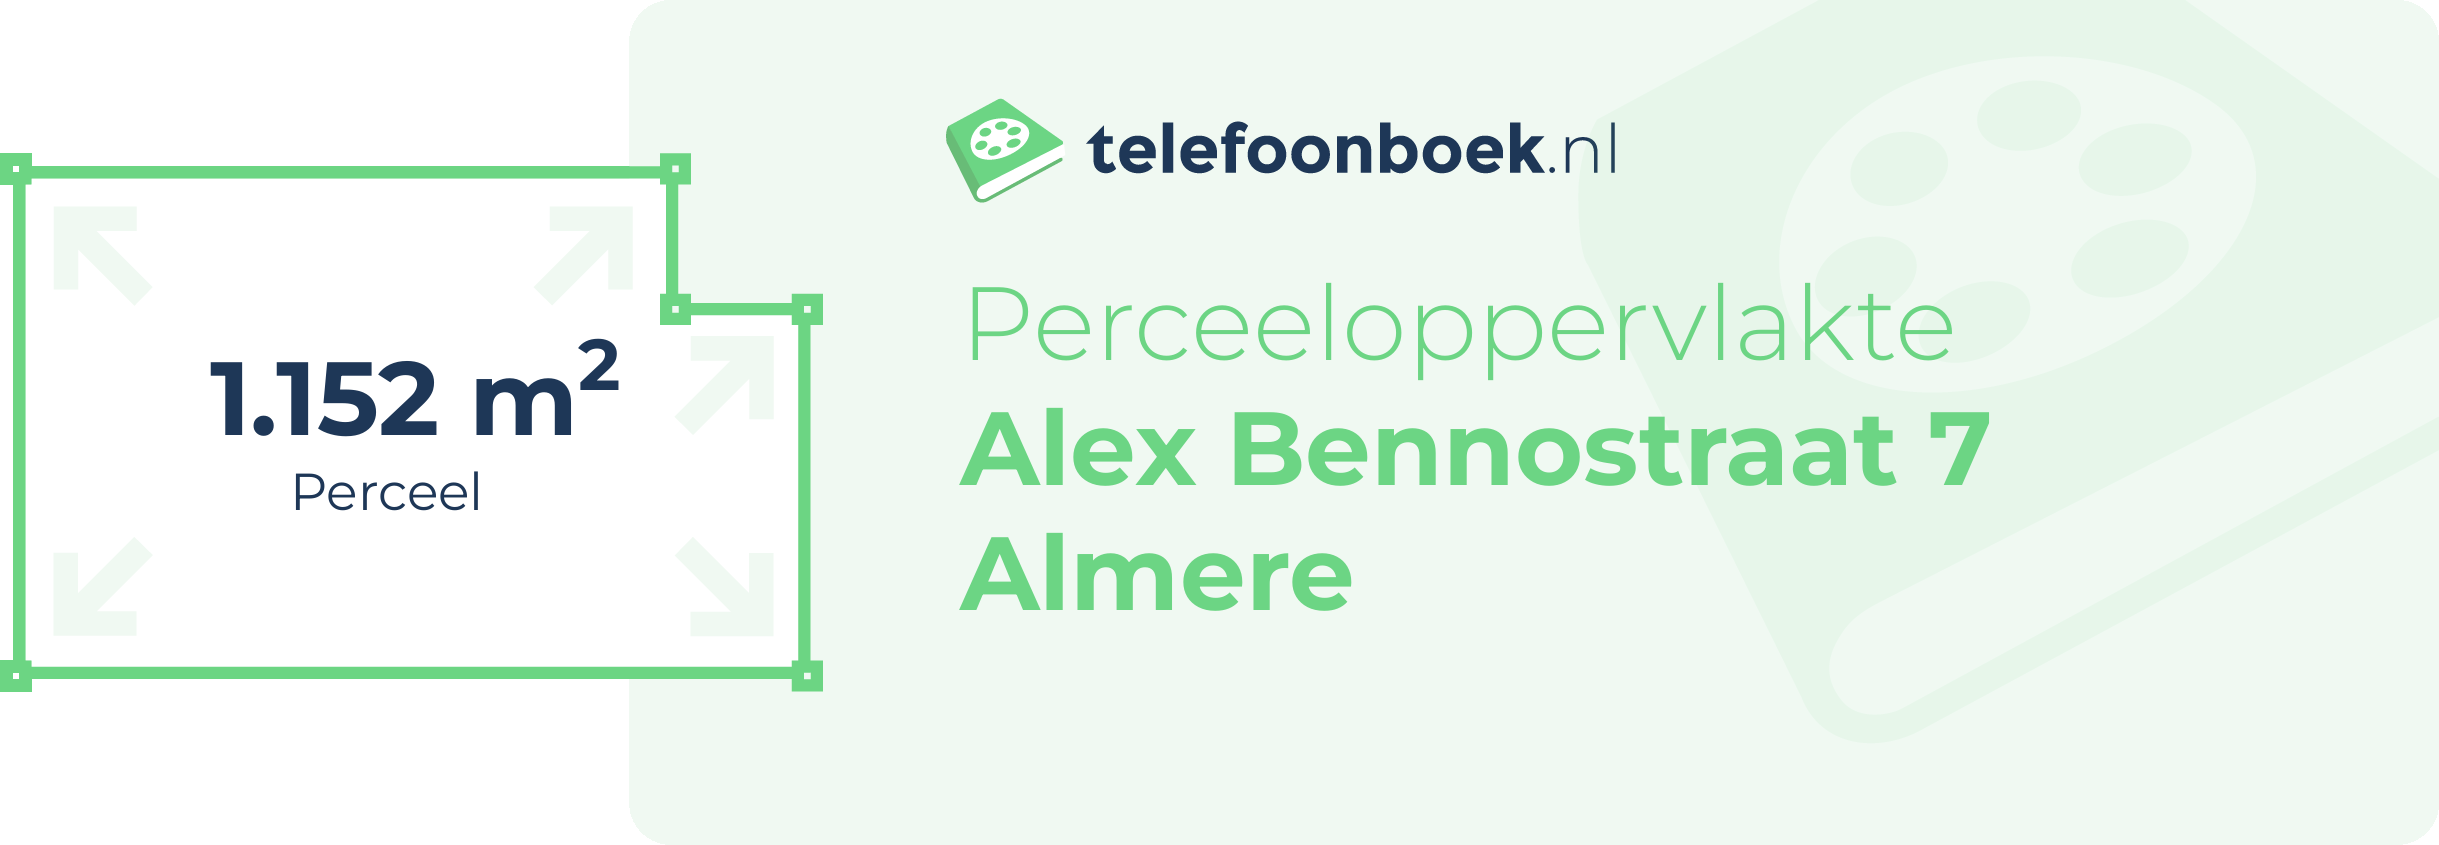 Perceeloppervlakte Alex Bennostraat 7 Almere